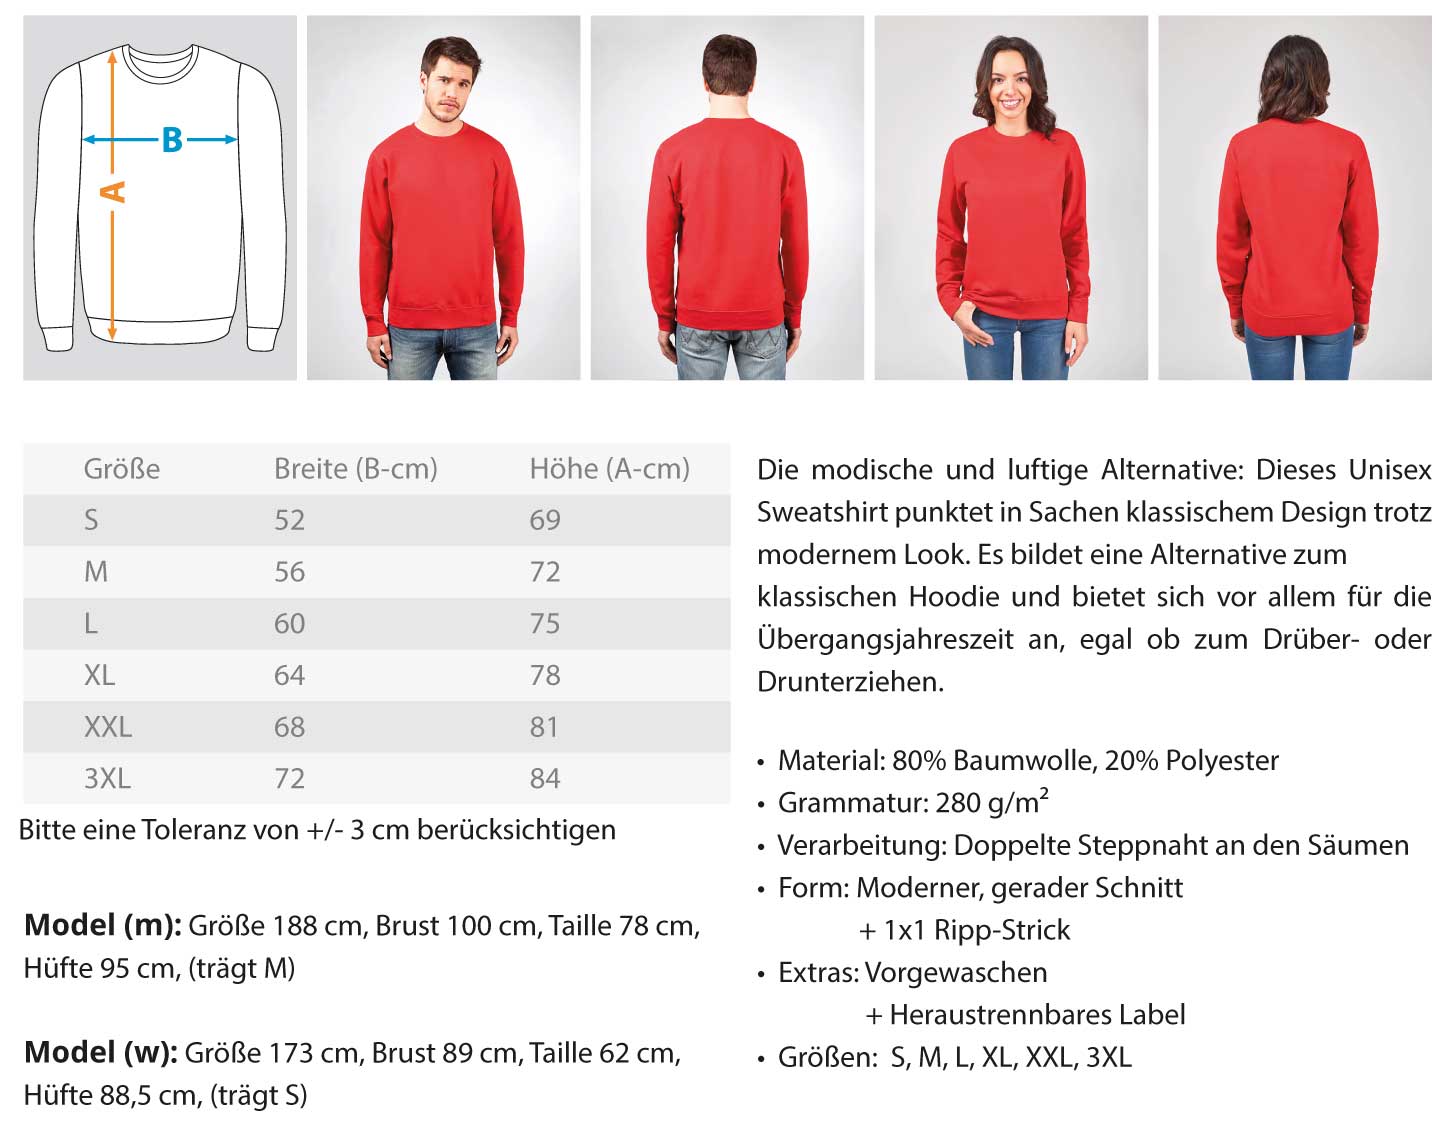 Gerüstbauer Handwerk mit Tradition  - Unisex Pullover €32.95 Gerüstbauer - Shop >>